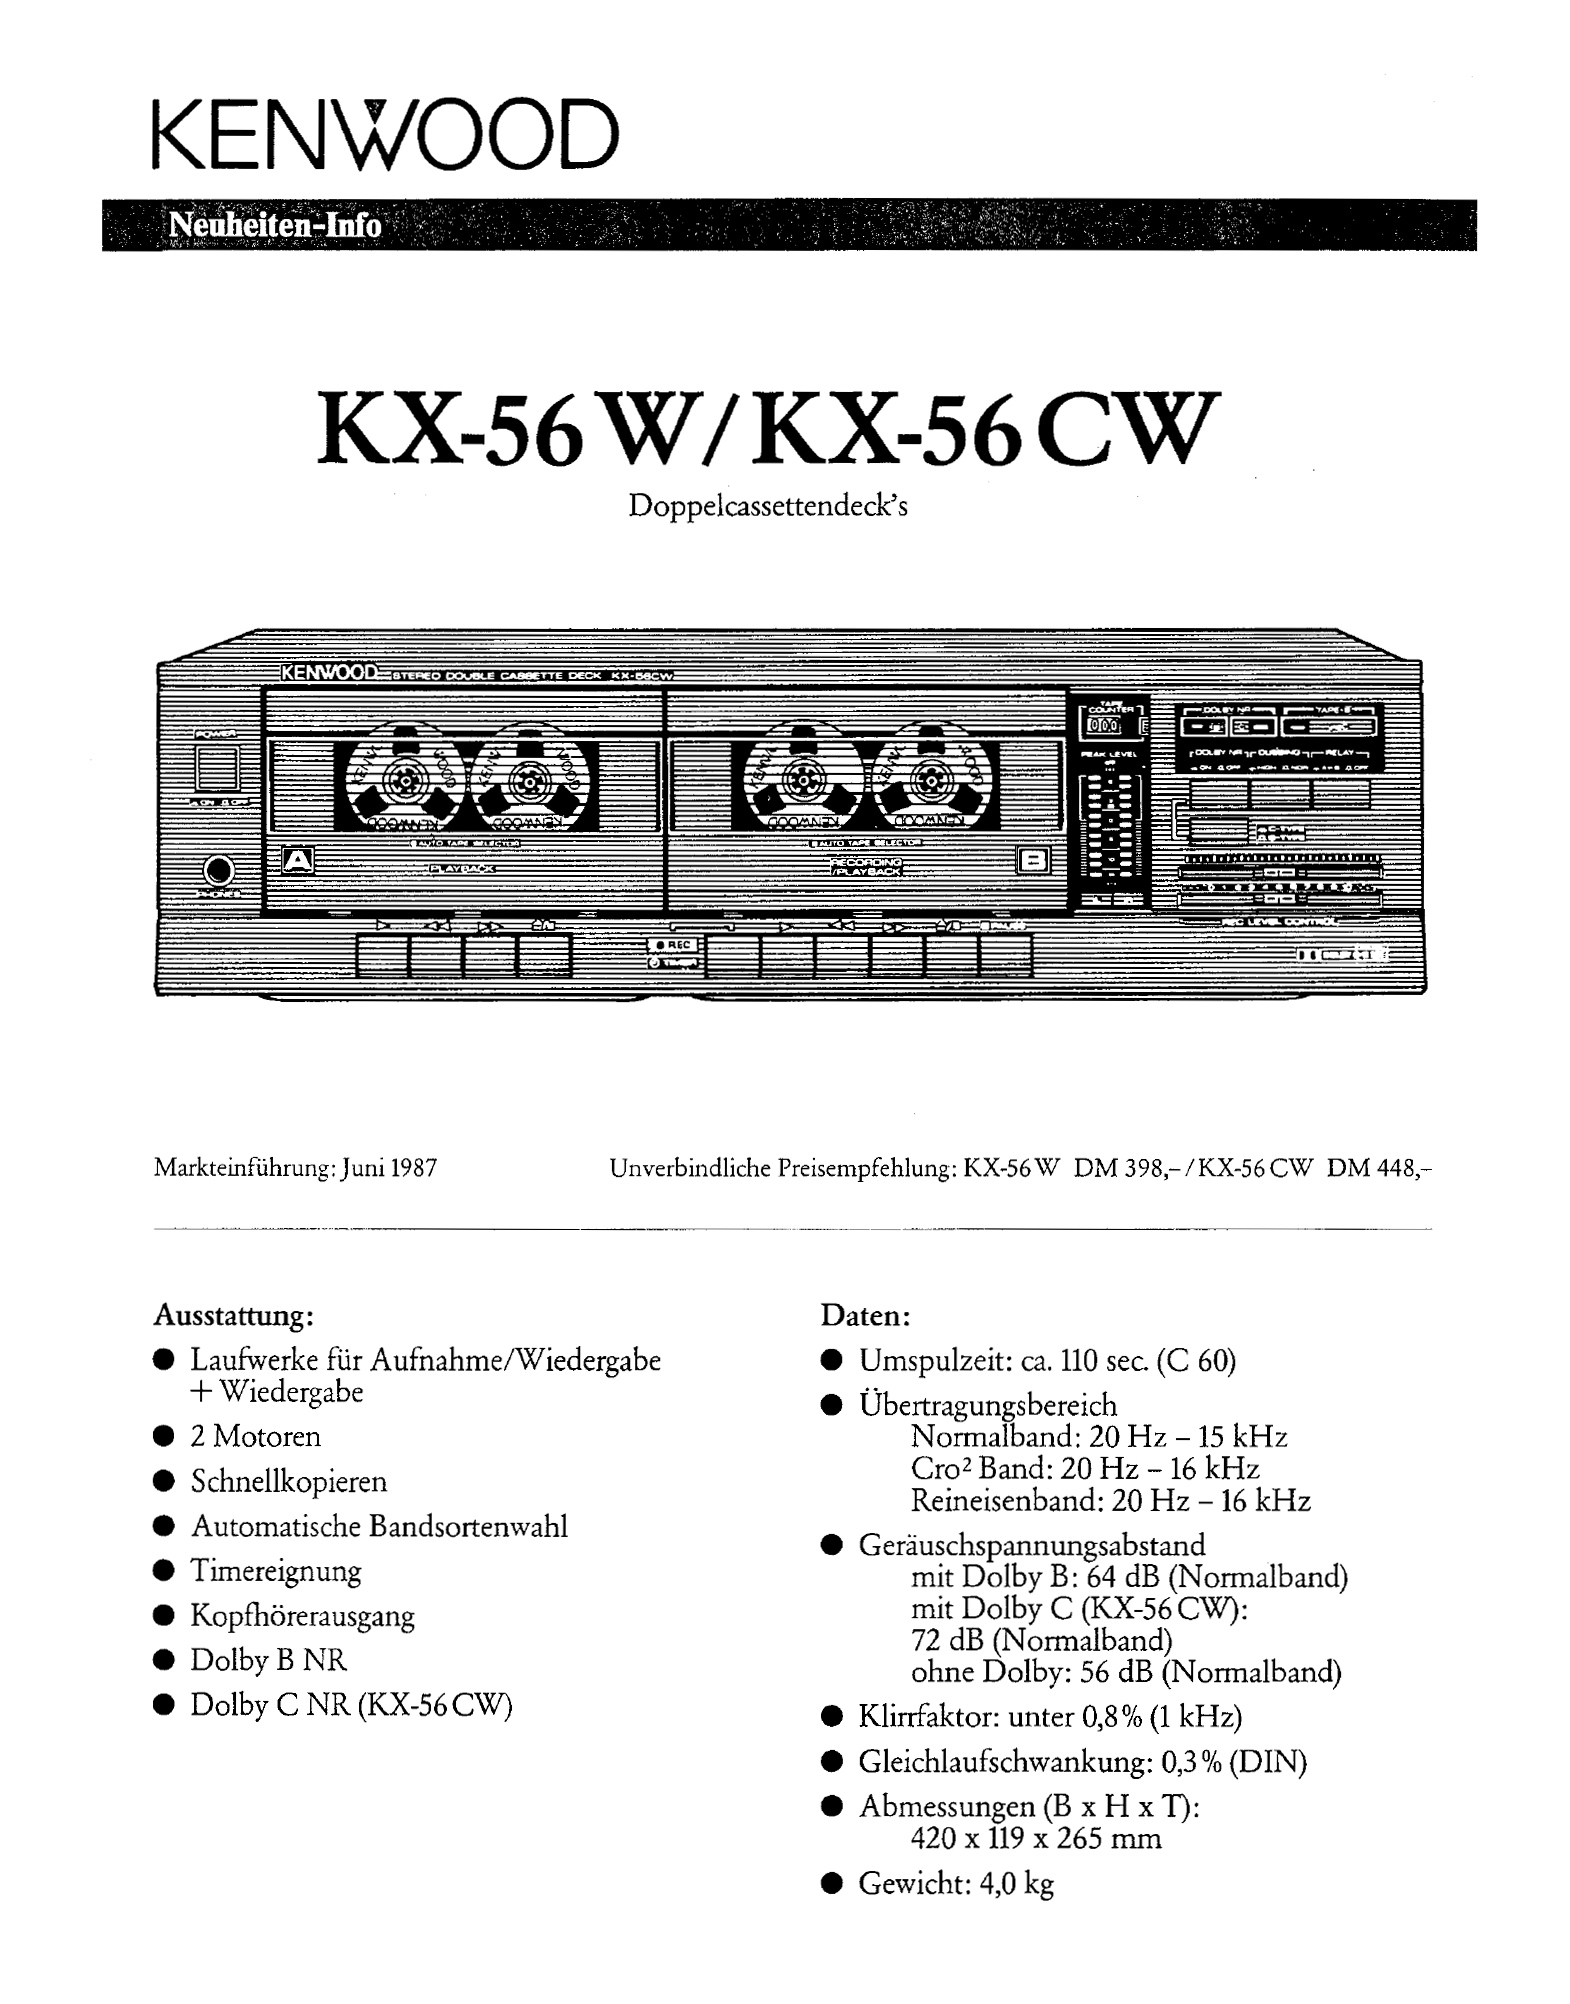 Kenwood KX-56 W-CW-Prospekt-1987.jpg